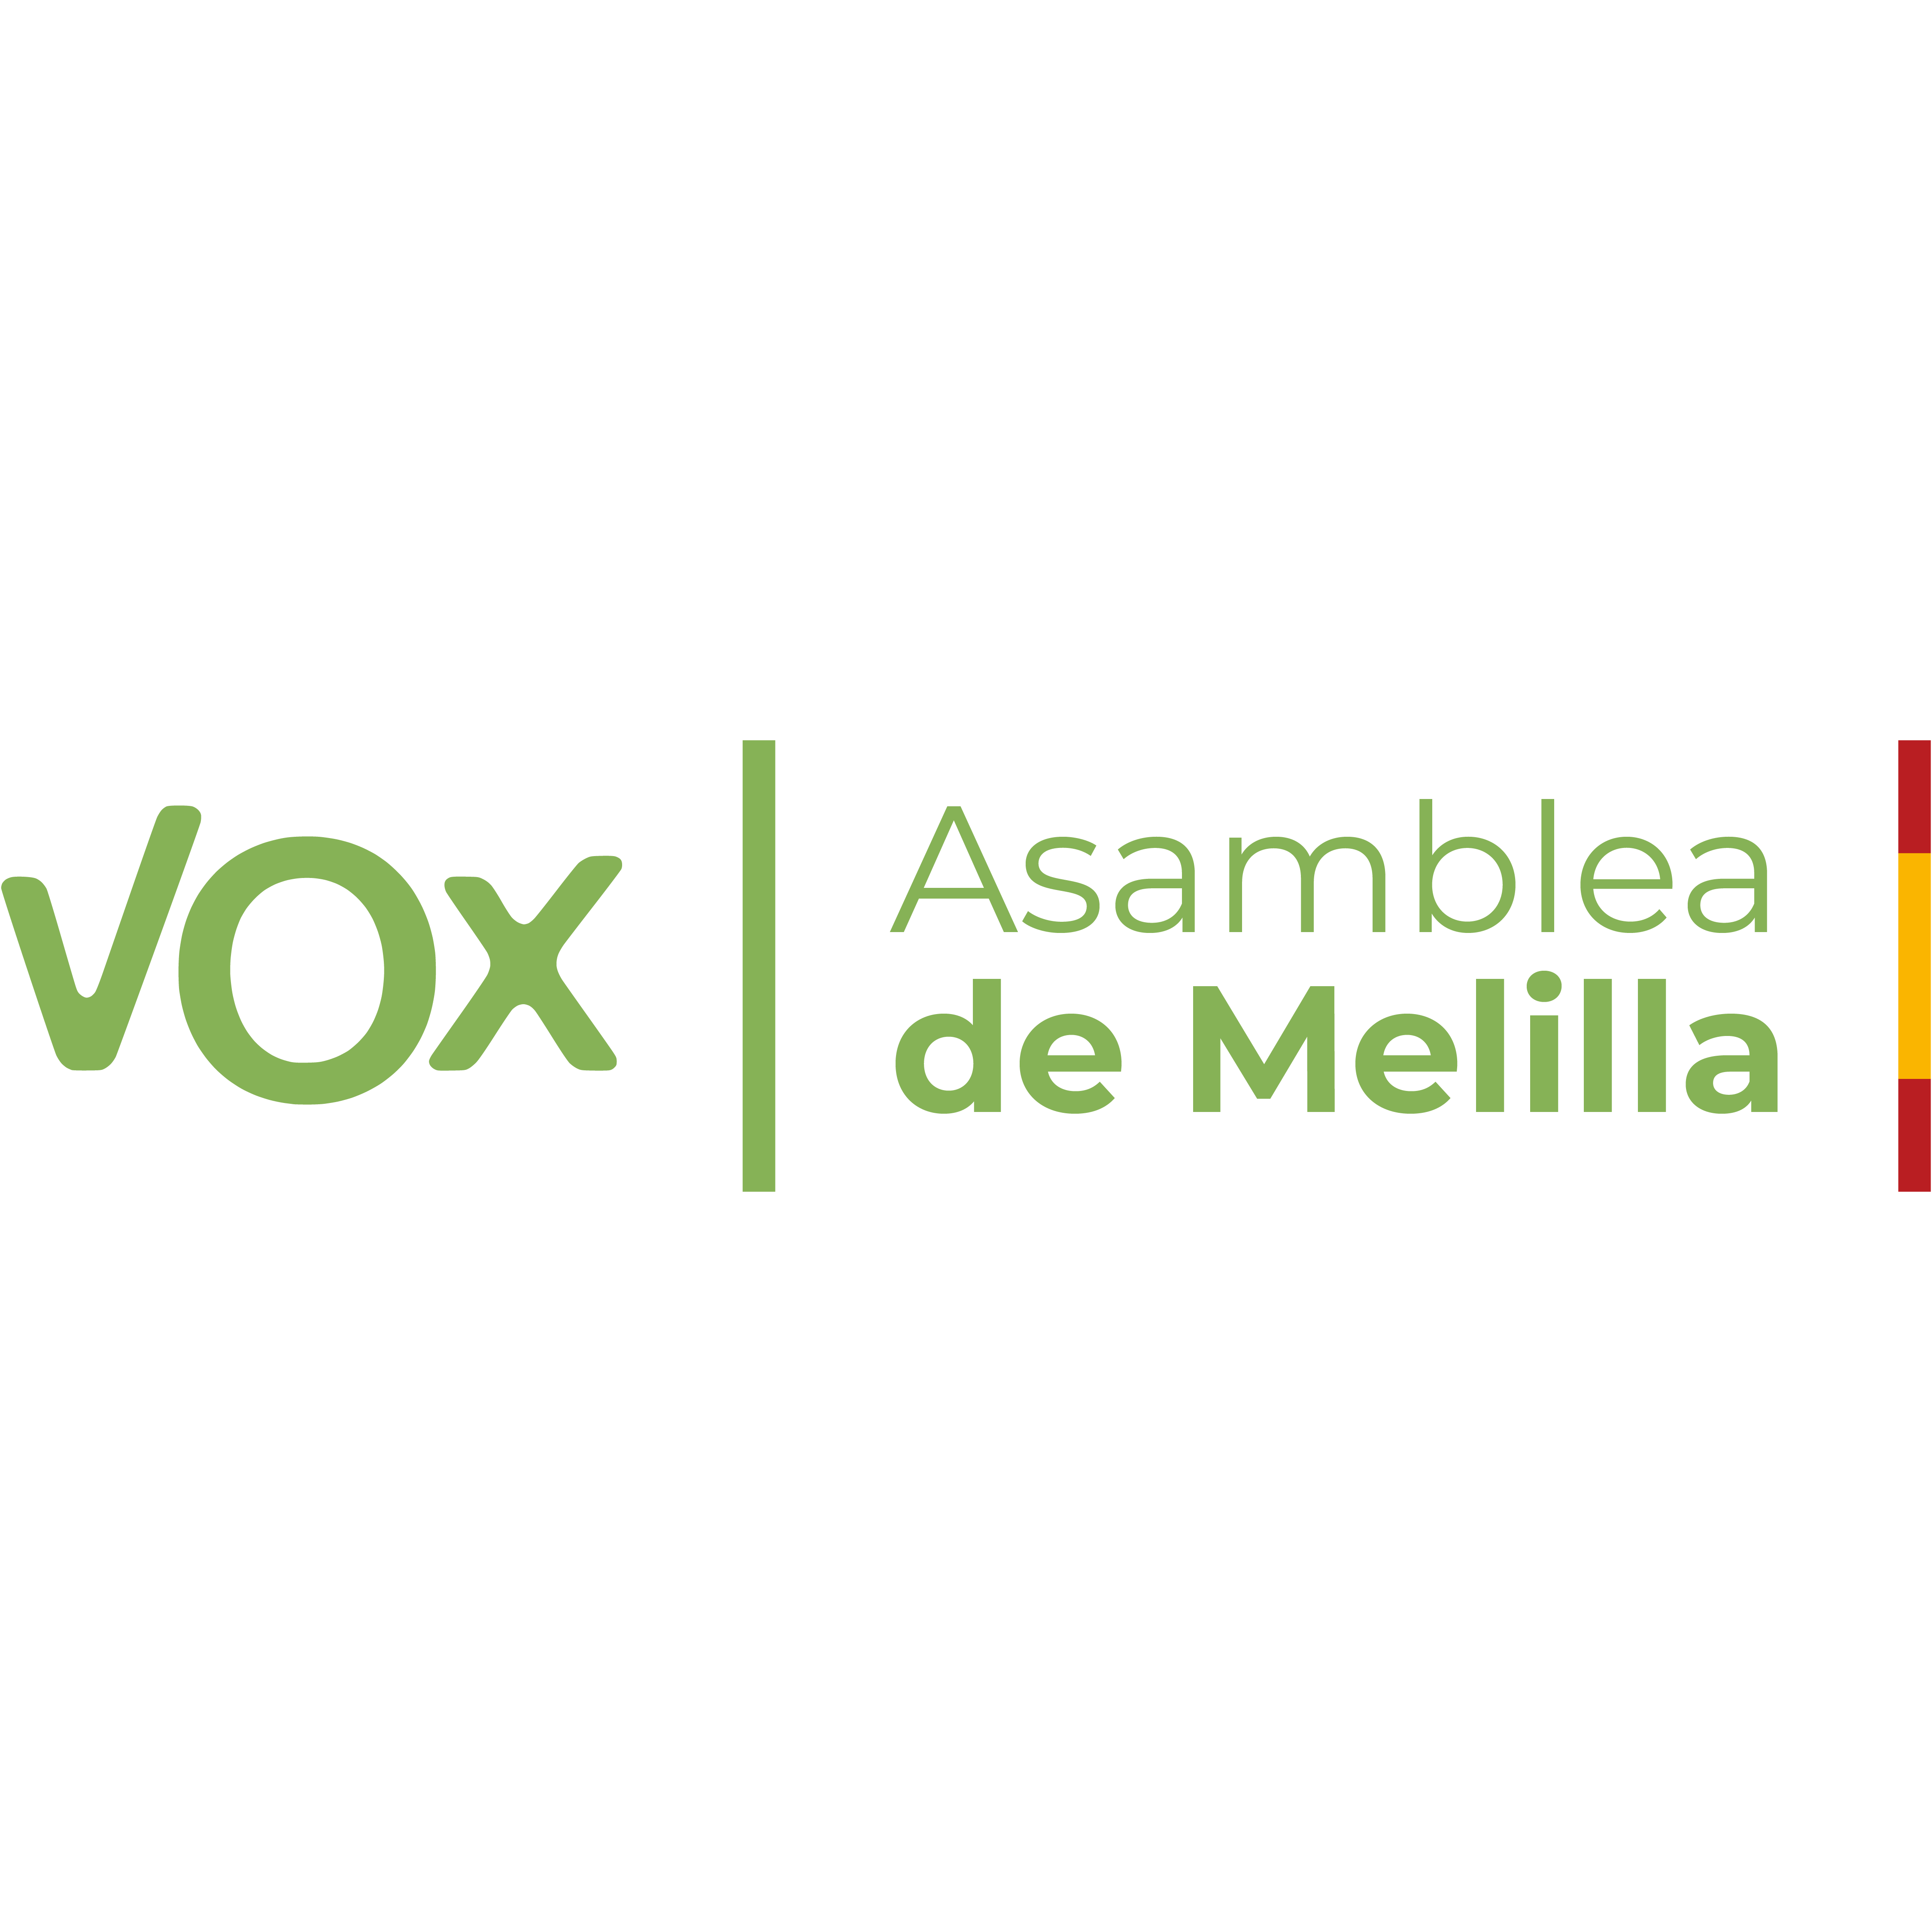 Asamblea de Melilla